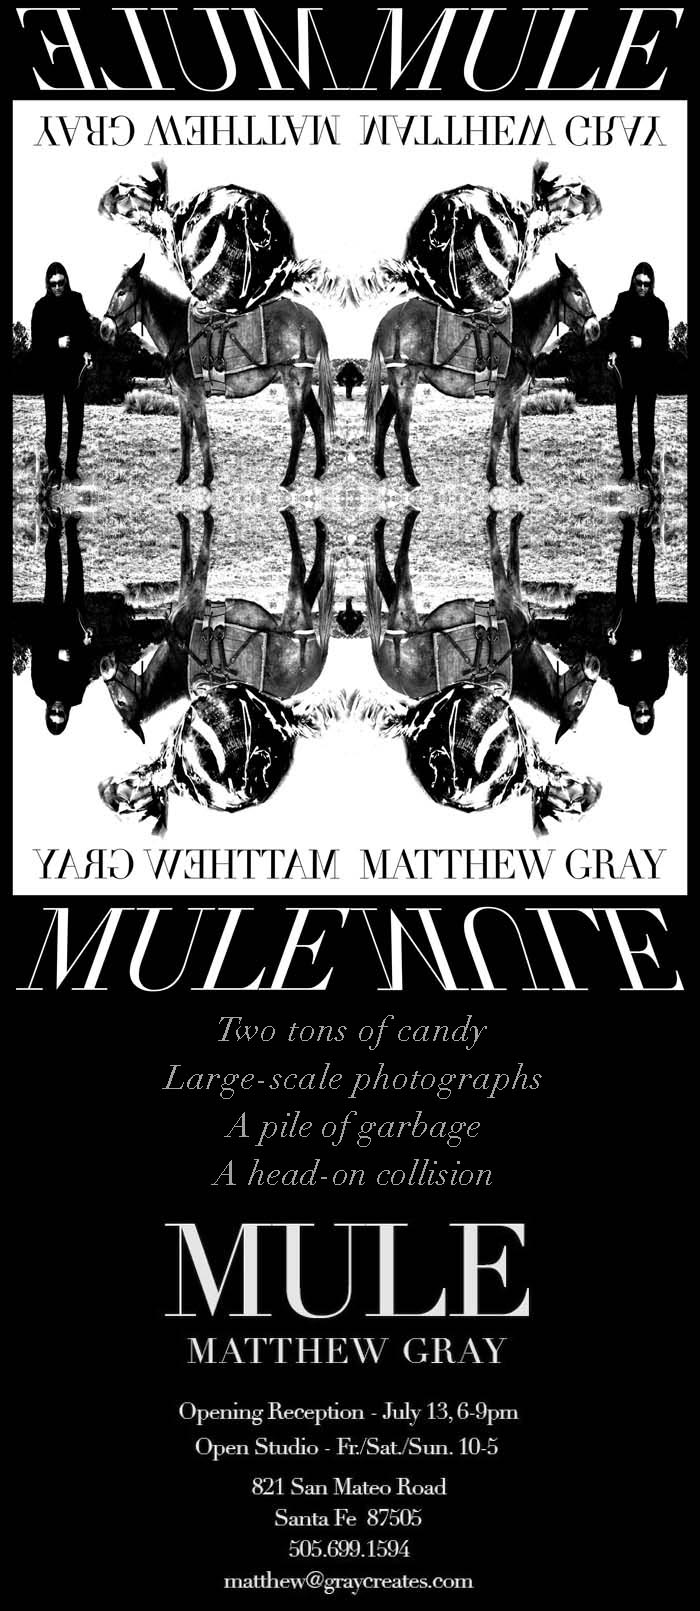 Mule Matthew Gray Art and Photography